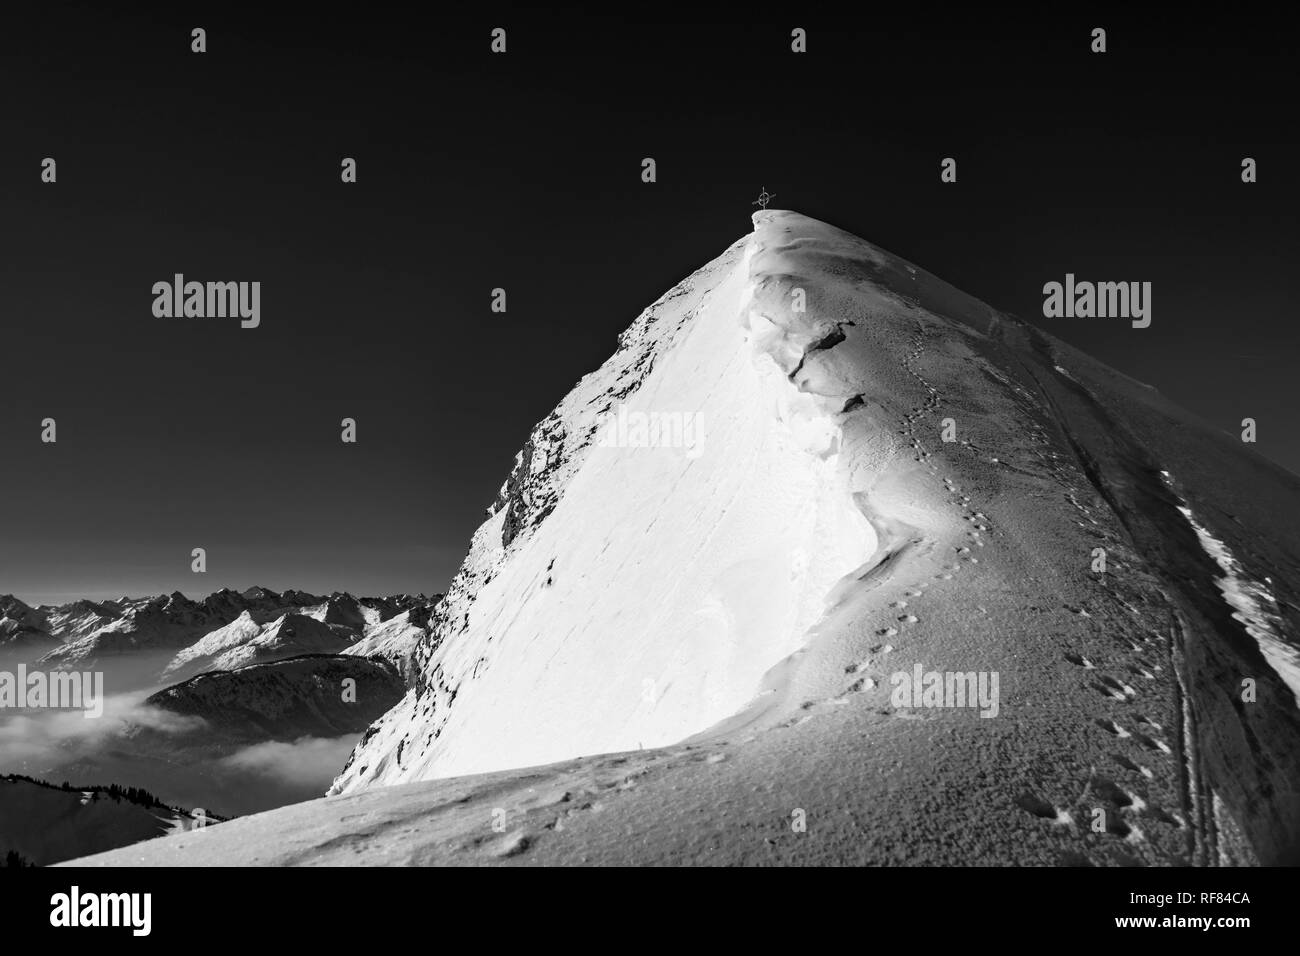 Winter summit ridge of the Schneidspitze, in the background the Allgäu Alps, Reutte, Außerfern, Tyrol, Austria Stock Photo